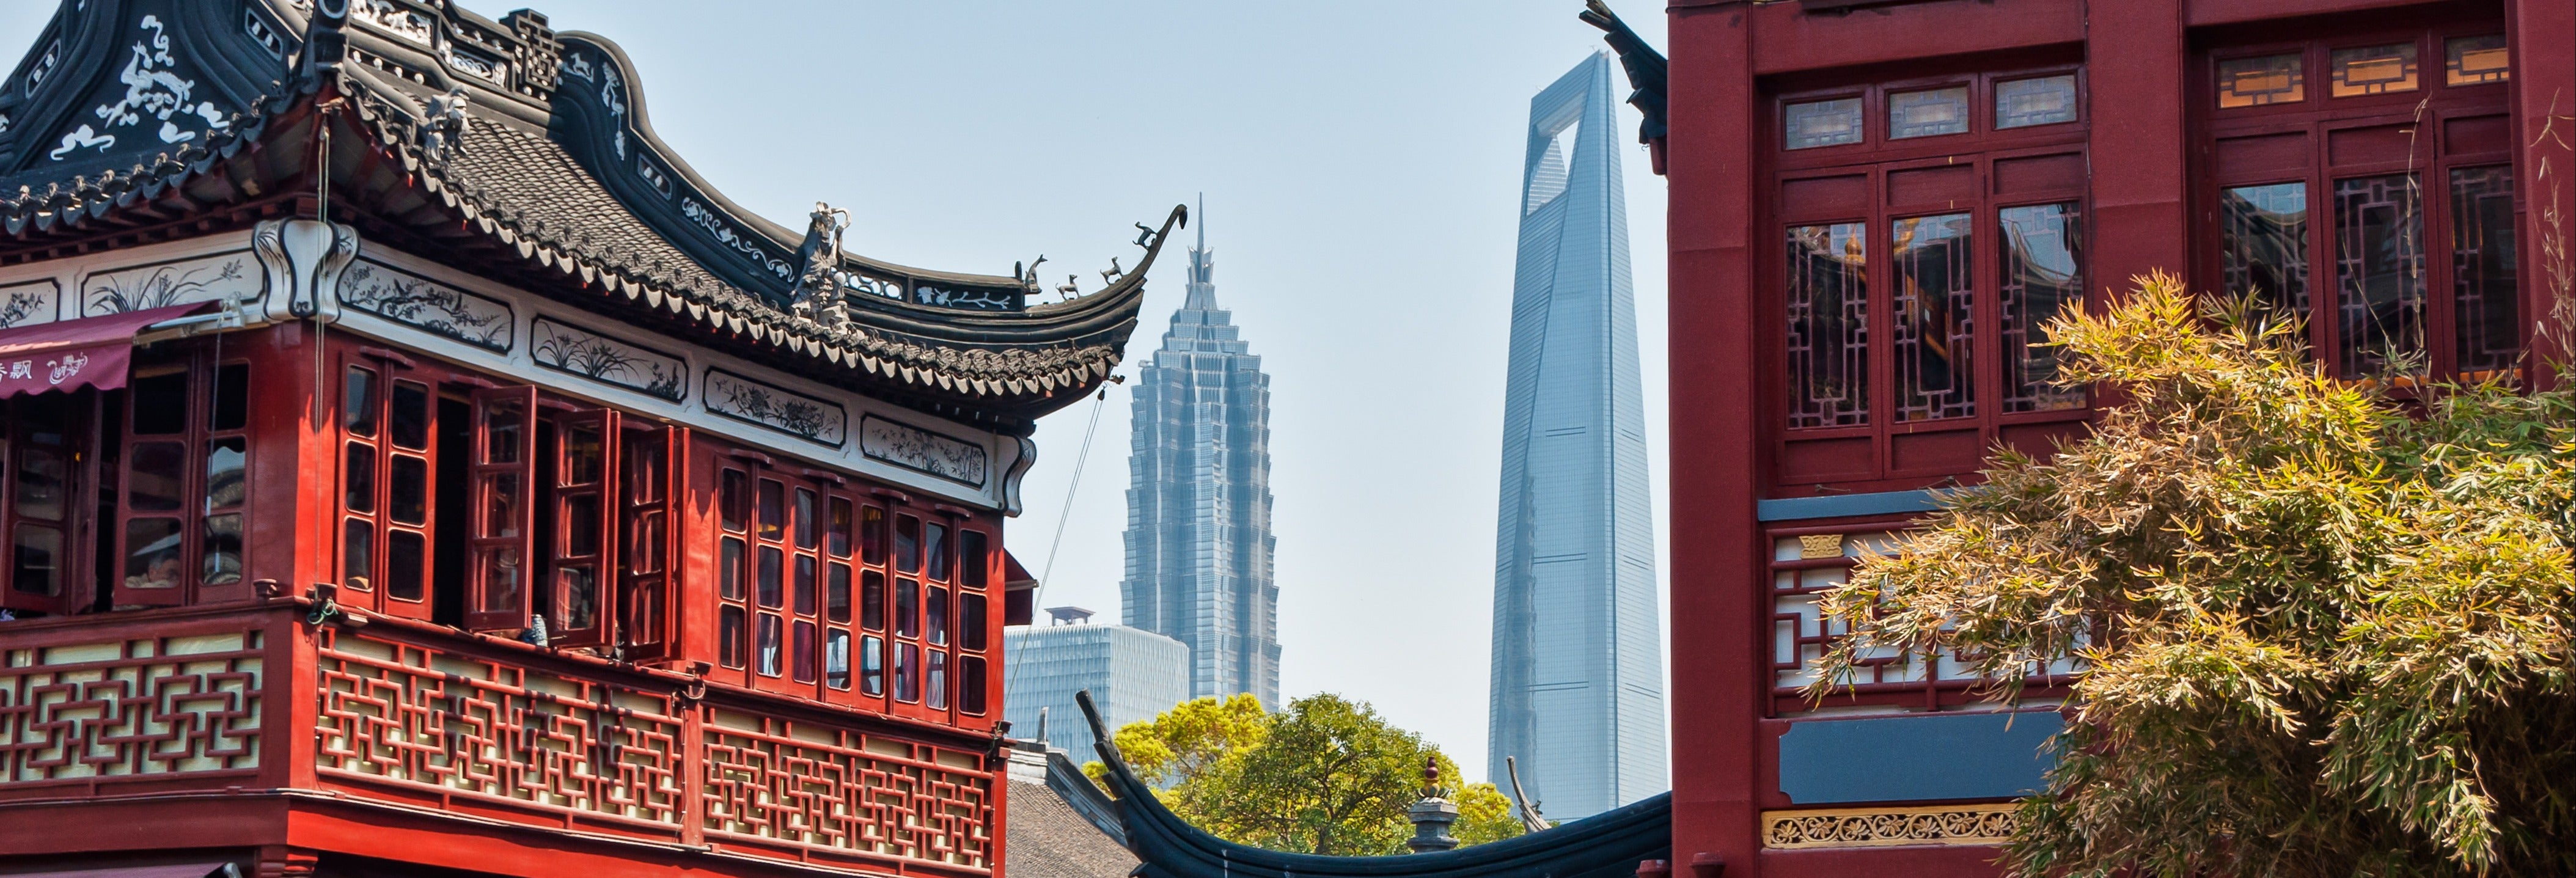 Visita guiada pela Shanghai histórica